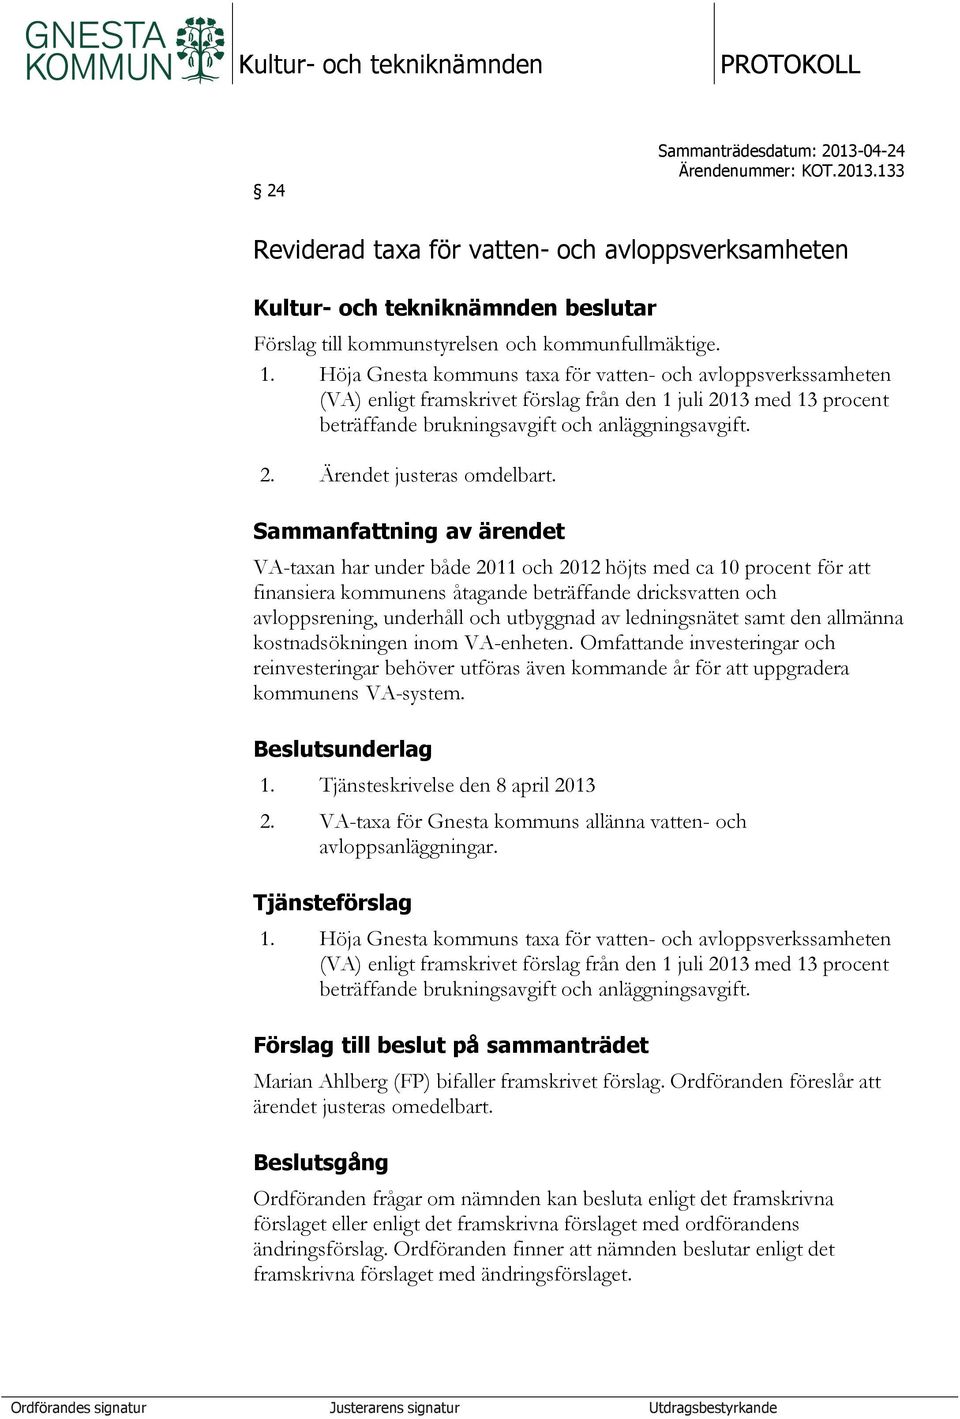 Höja Gnesta kommuns taxa för vatten- och avloppsverkssamheten (VA) enligt framskrivet förslag från den 1 juli 2013 med 13 procent beträffande brukningsavgift och anläggningsavgift. 2. Ärendet justeras omdelbart.